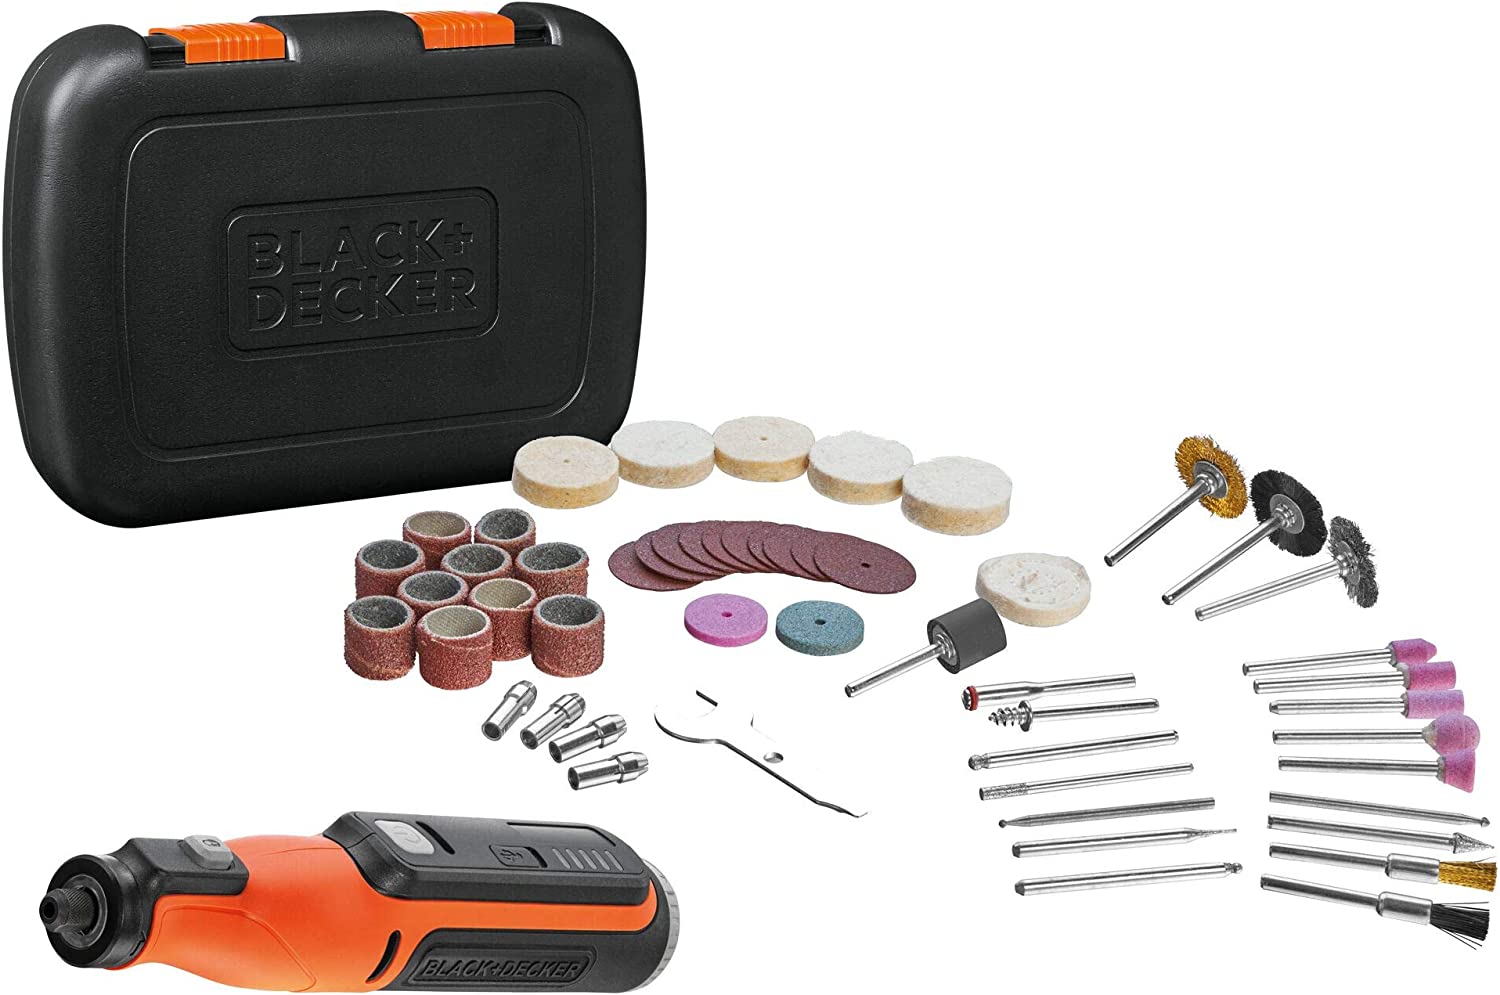 Black&Decker Black+Decker BCRT8IK-XJ multifunction tool, 7.2 volts (orange/black, 52-piece accessories, in case)